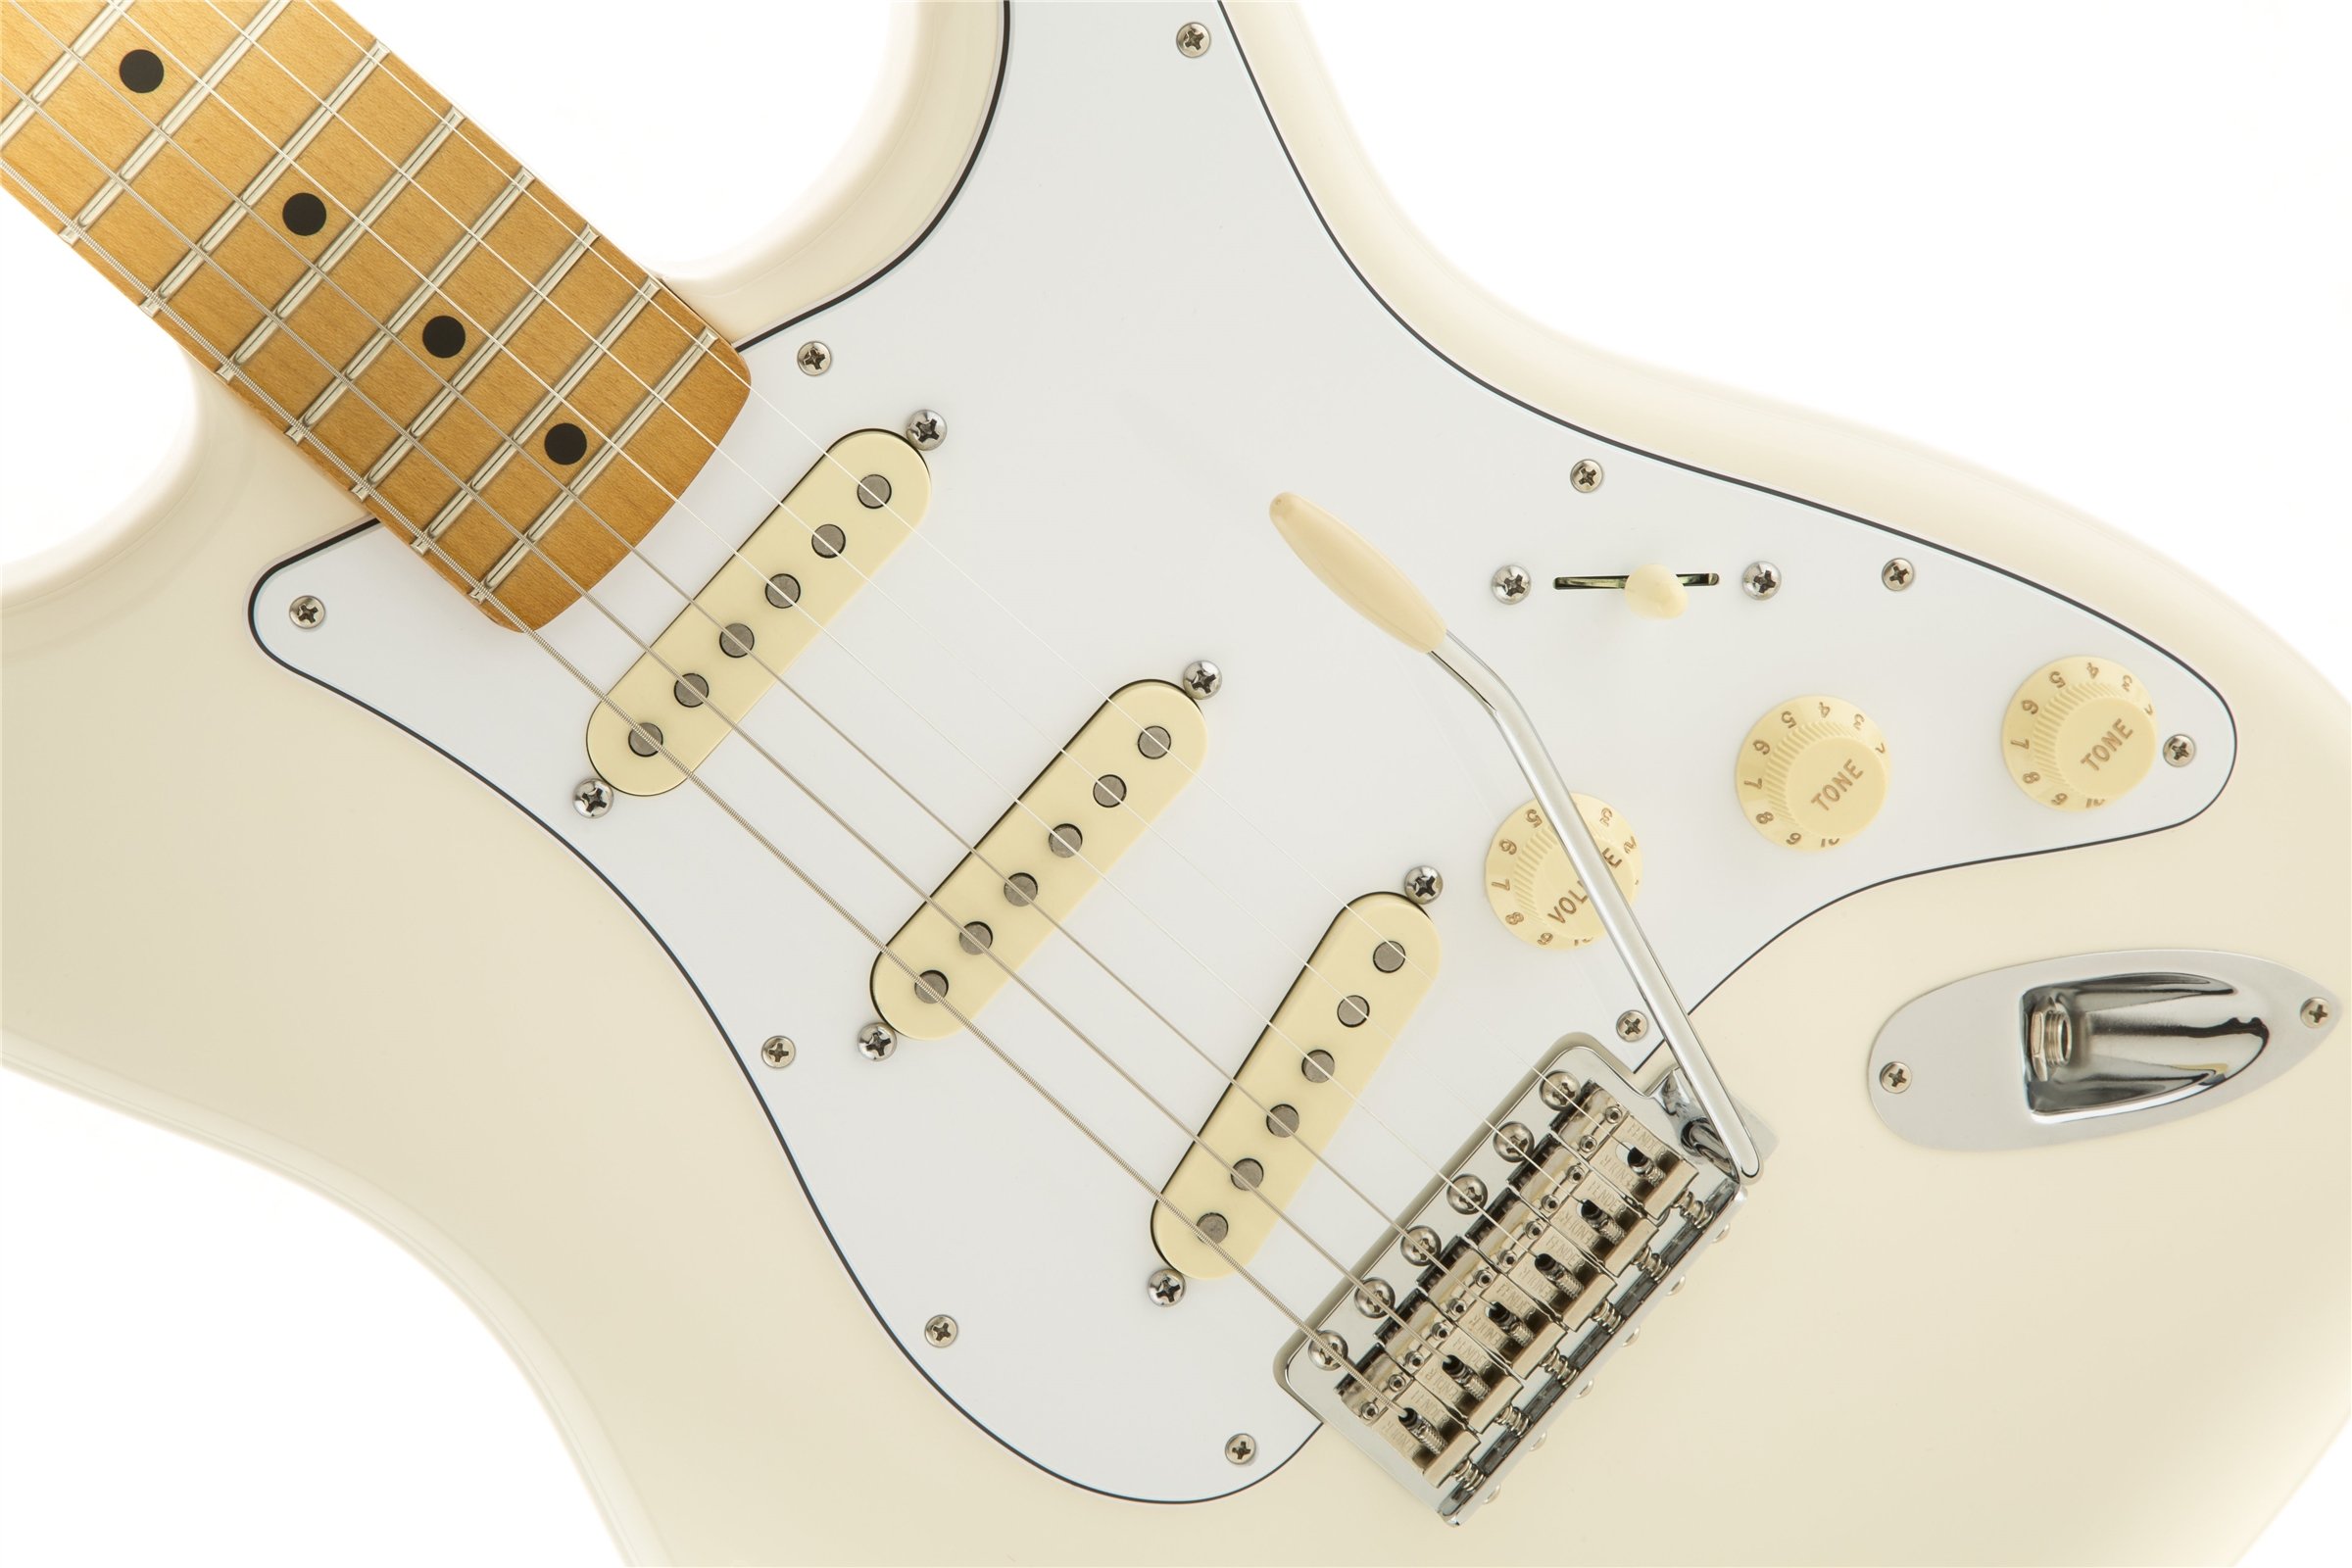 Taza de guitarra Fender Stratocaster de Jimi Hendrix de Woodstock 1969 